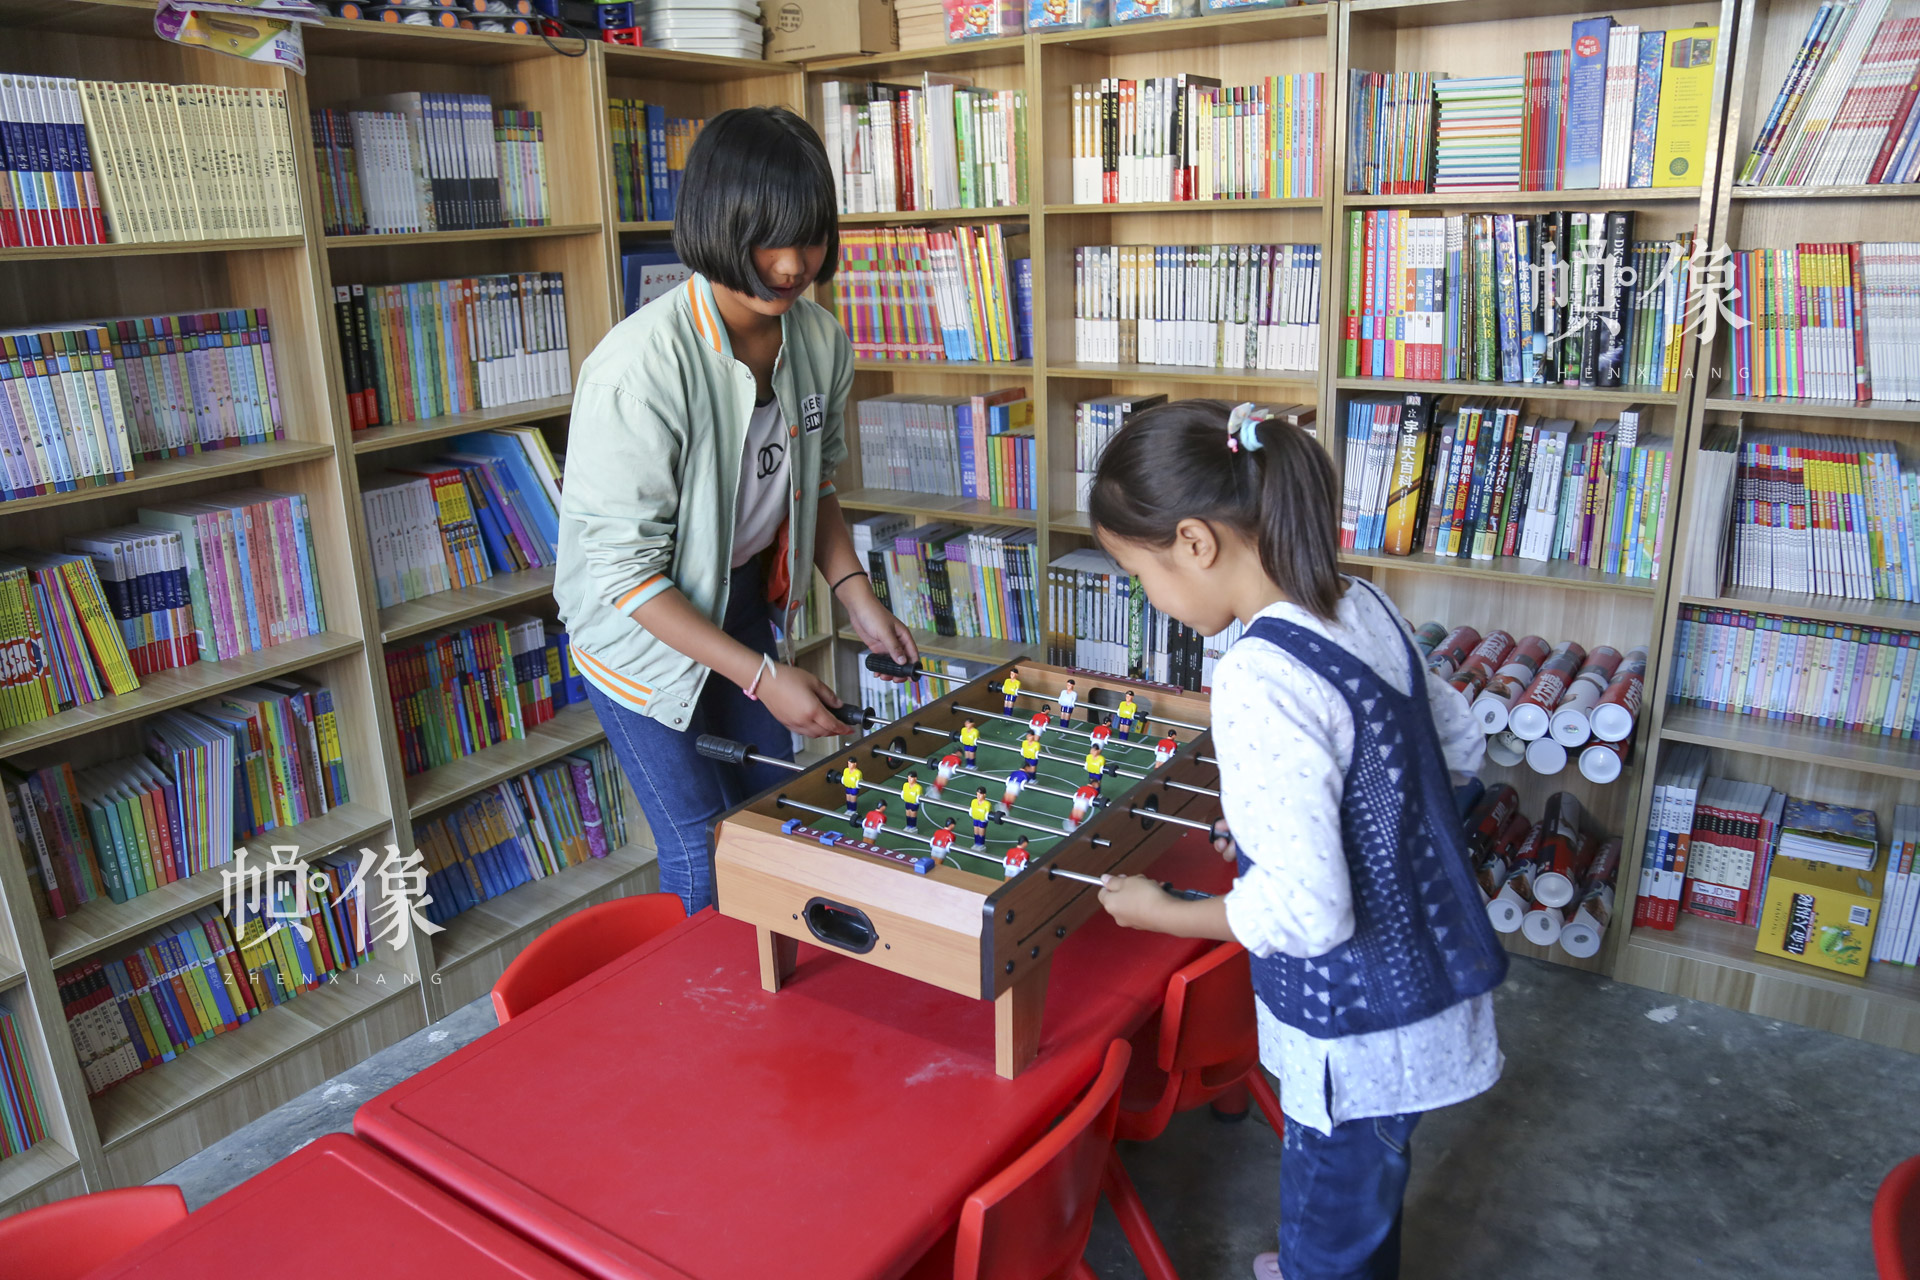 肖歡歡和金子涵在兒童快樂家園玩桌遊。“這裡有很多的圖書，還有很多的玩具，每天都有很多的小朋友來這裡玩，我就感到非常的開心、歡樂。”肖歡歡説。中國網記者 黃富友 攝